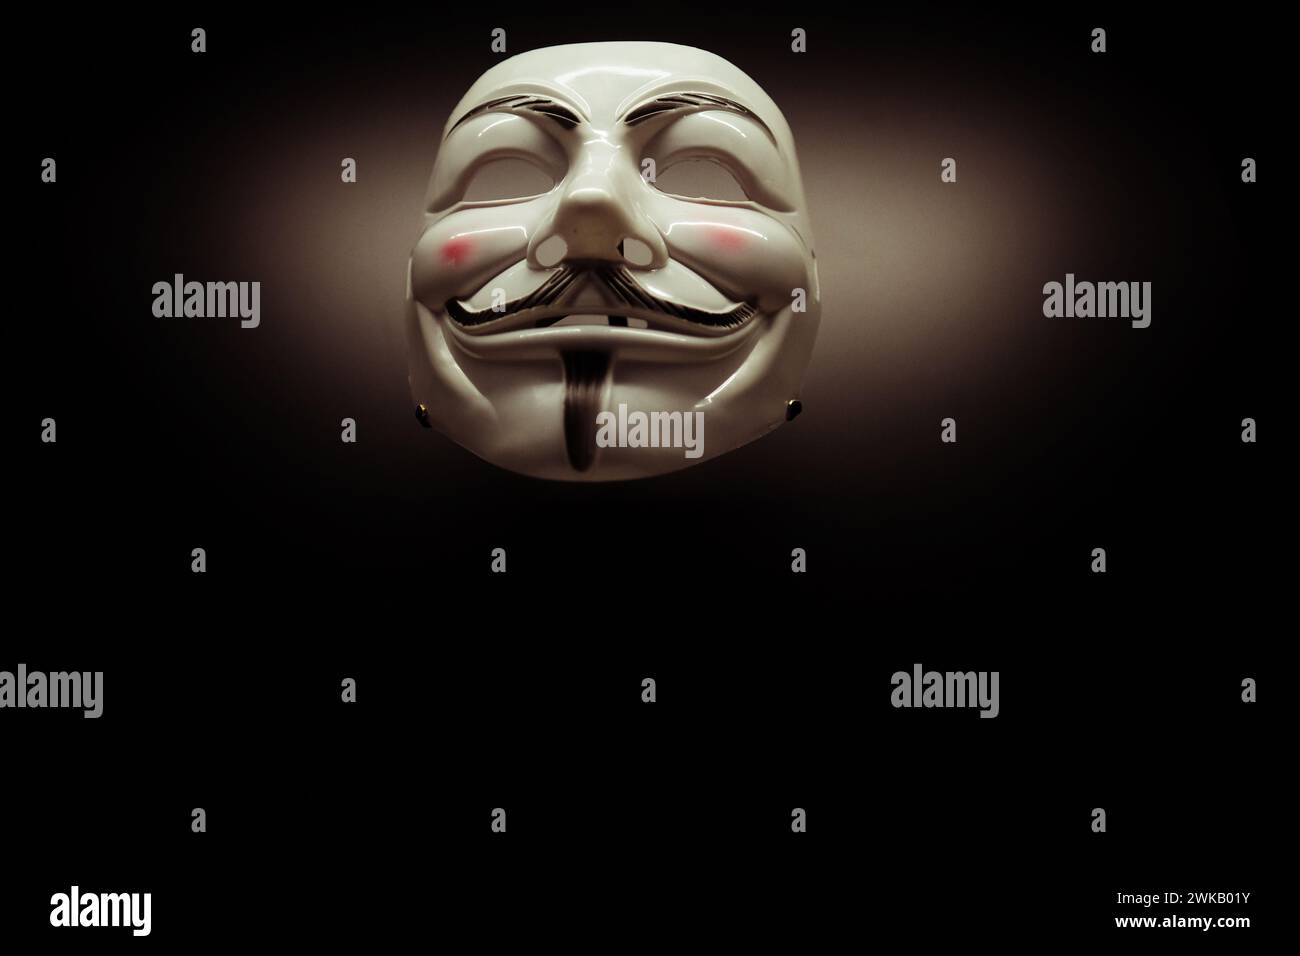 National Portrait Gallery London UK un masque anonyme dans le style de Guy Fawkes exposé - populaire auprès des manifestants du 21ème siècle Banque D'Images